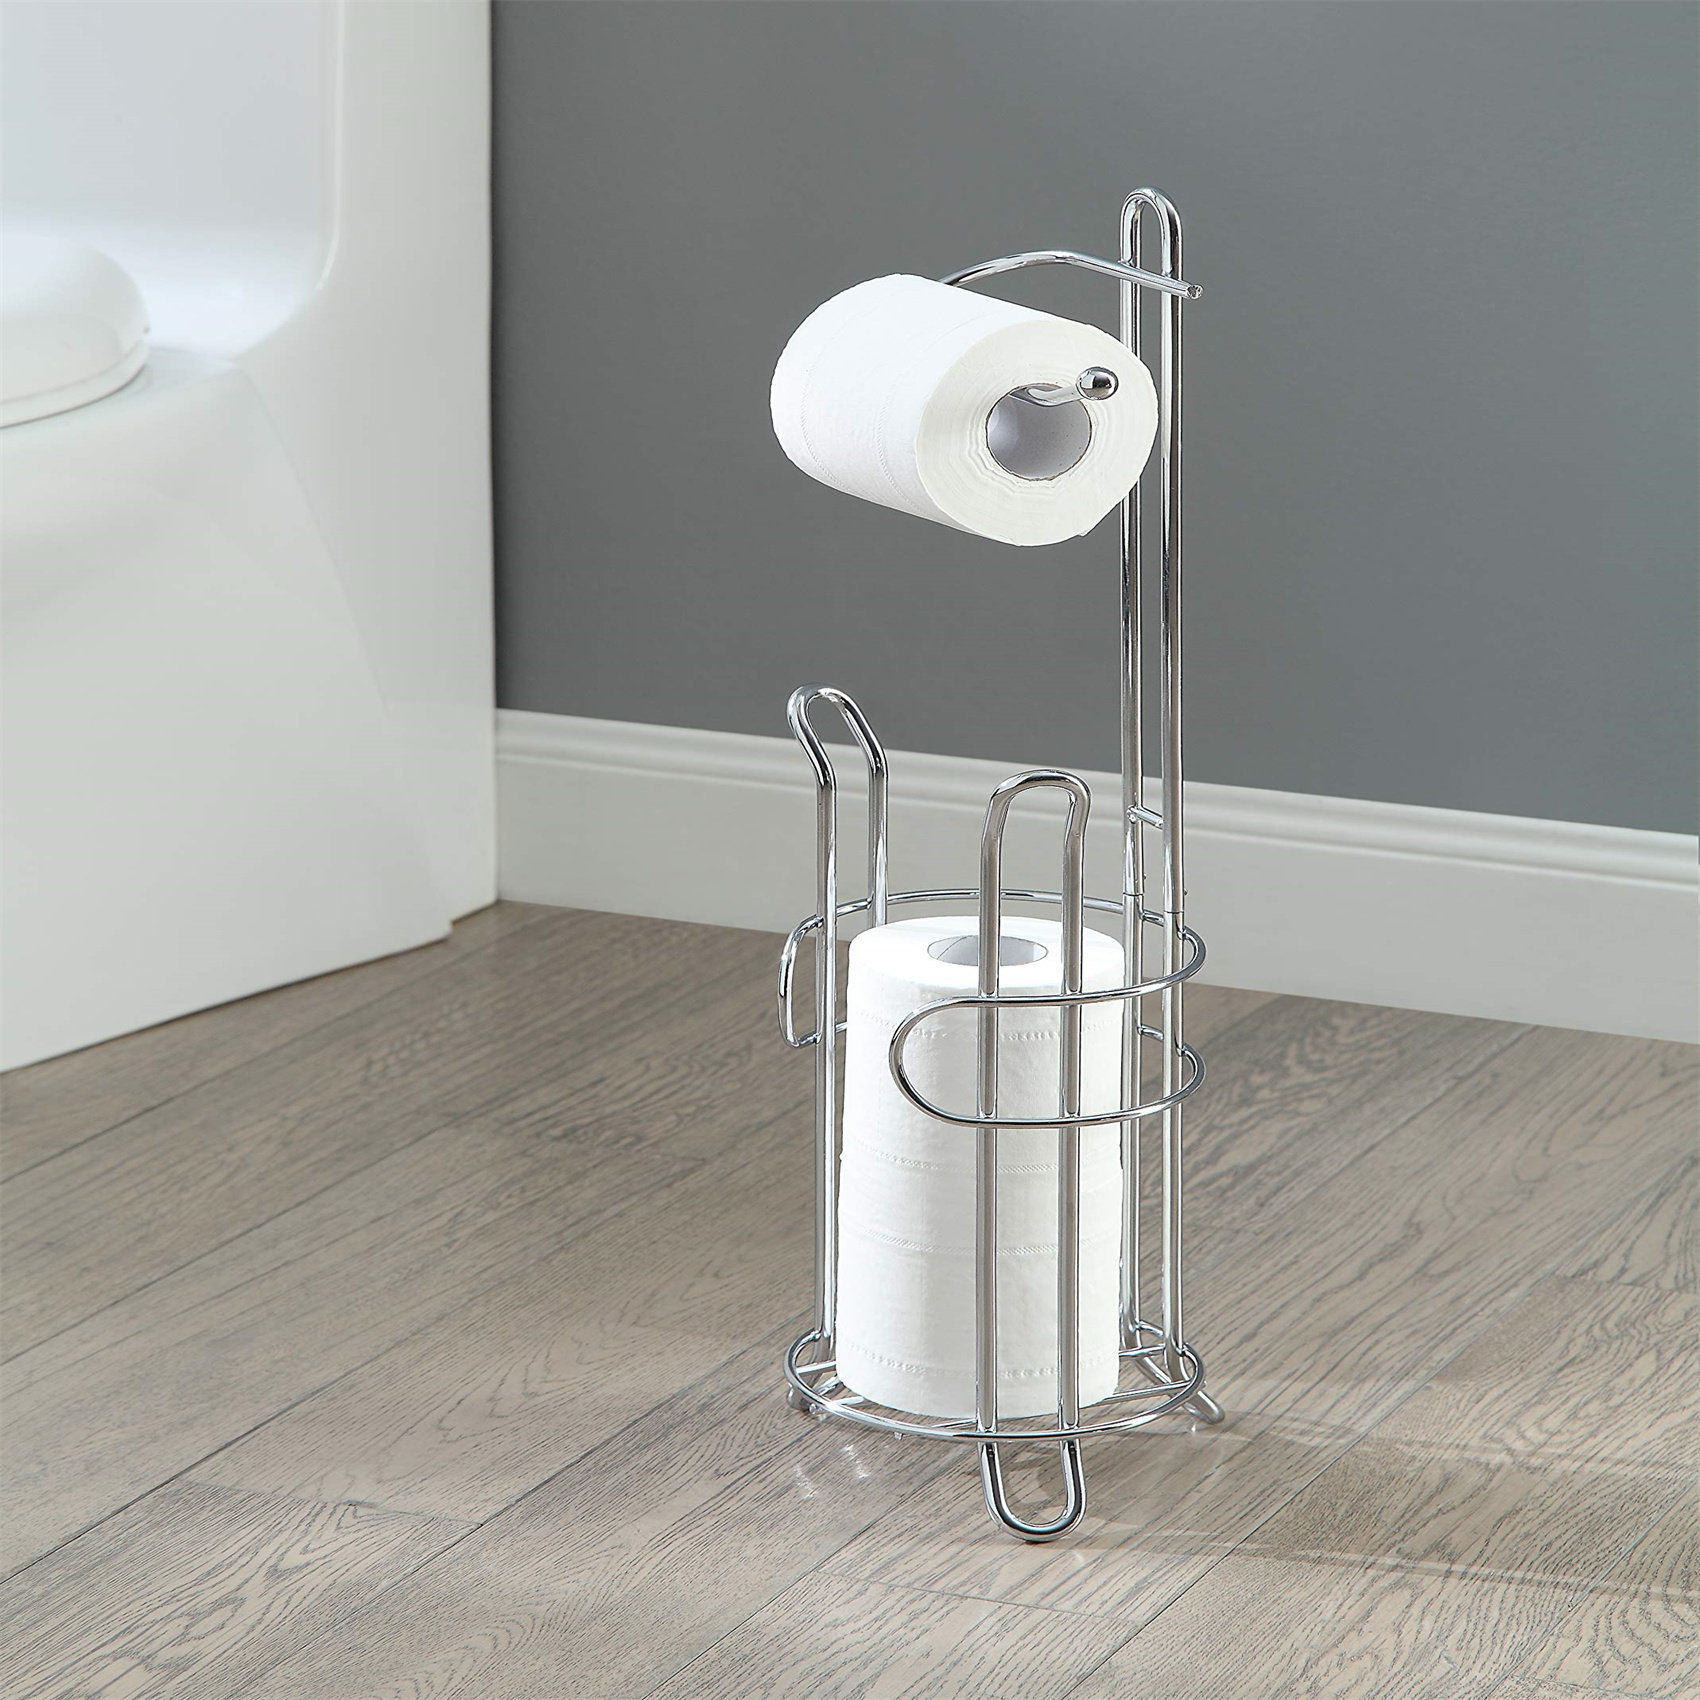 Stainless Steel Toilet Roll Holder - Freestanding Bathroom Tissue